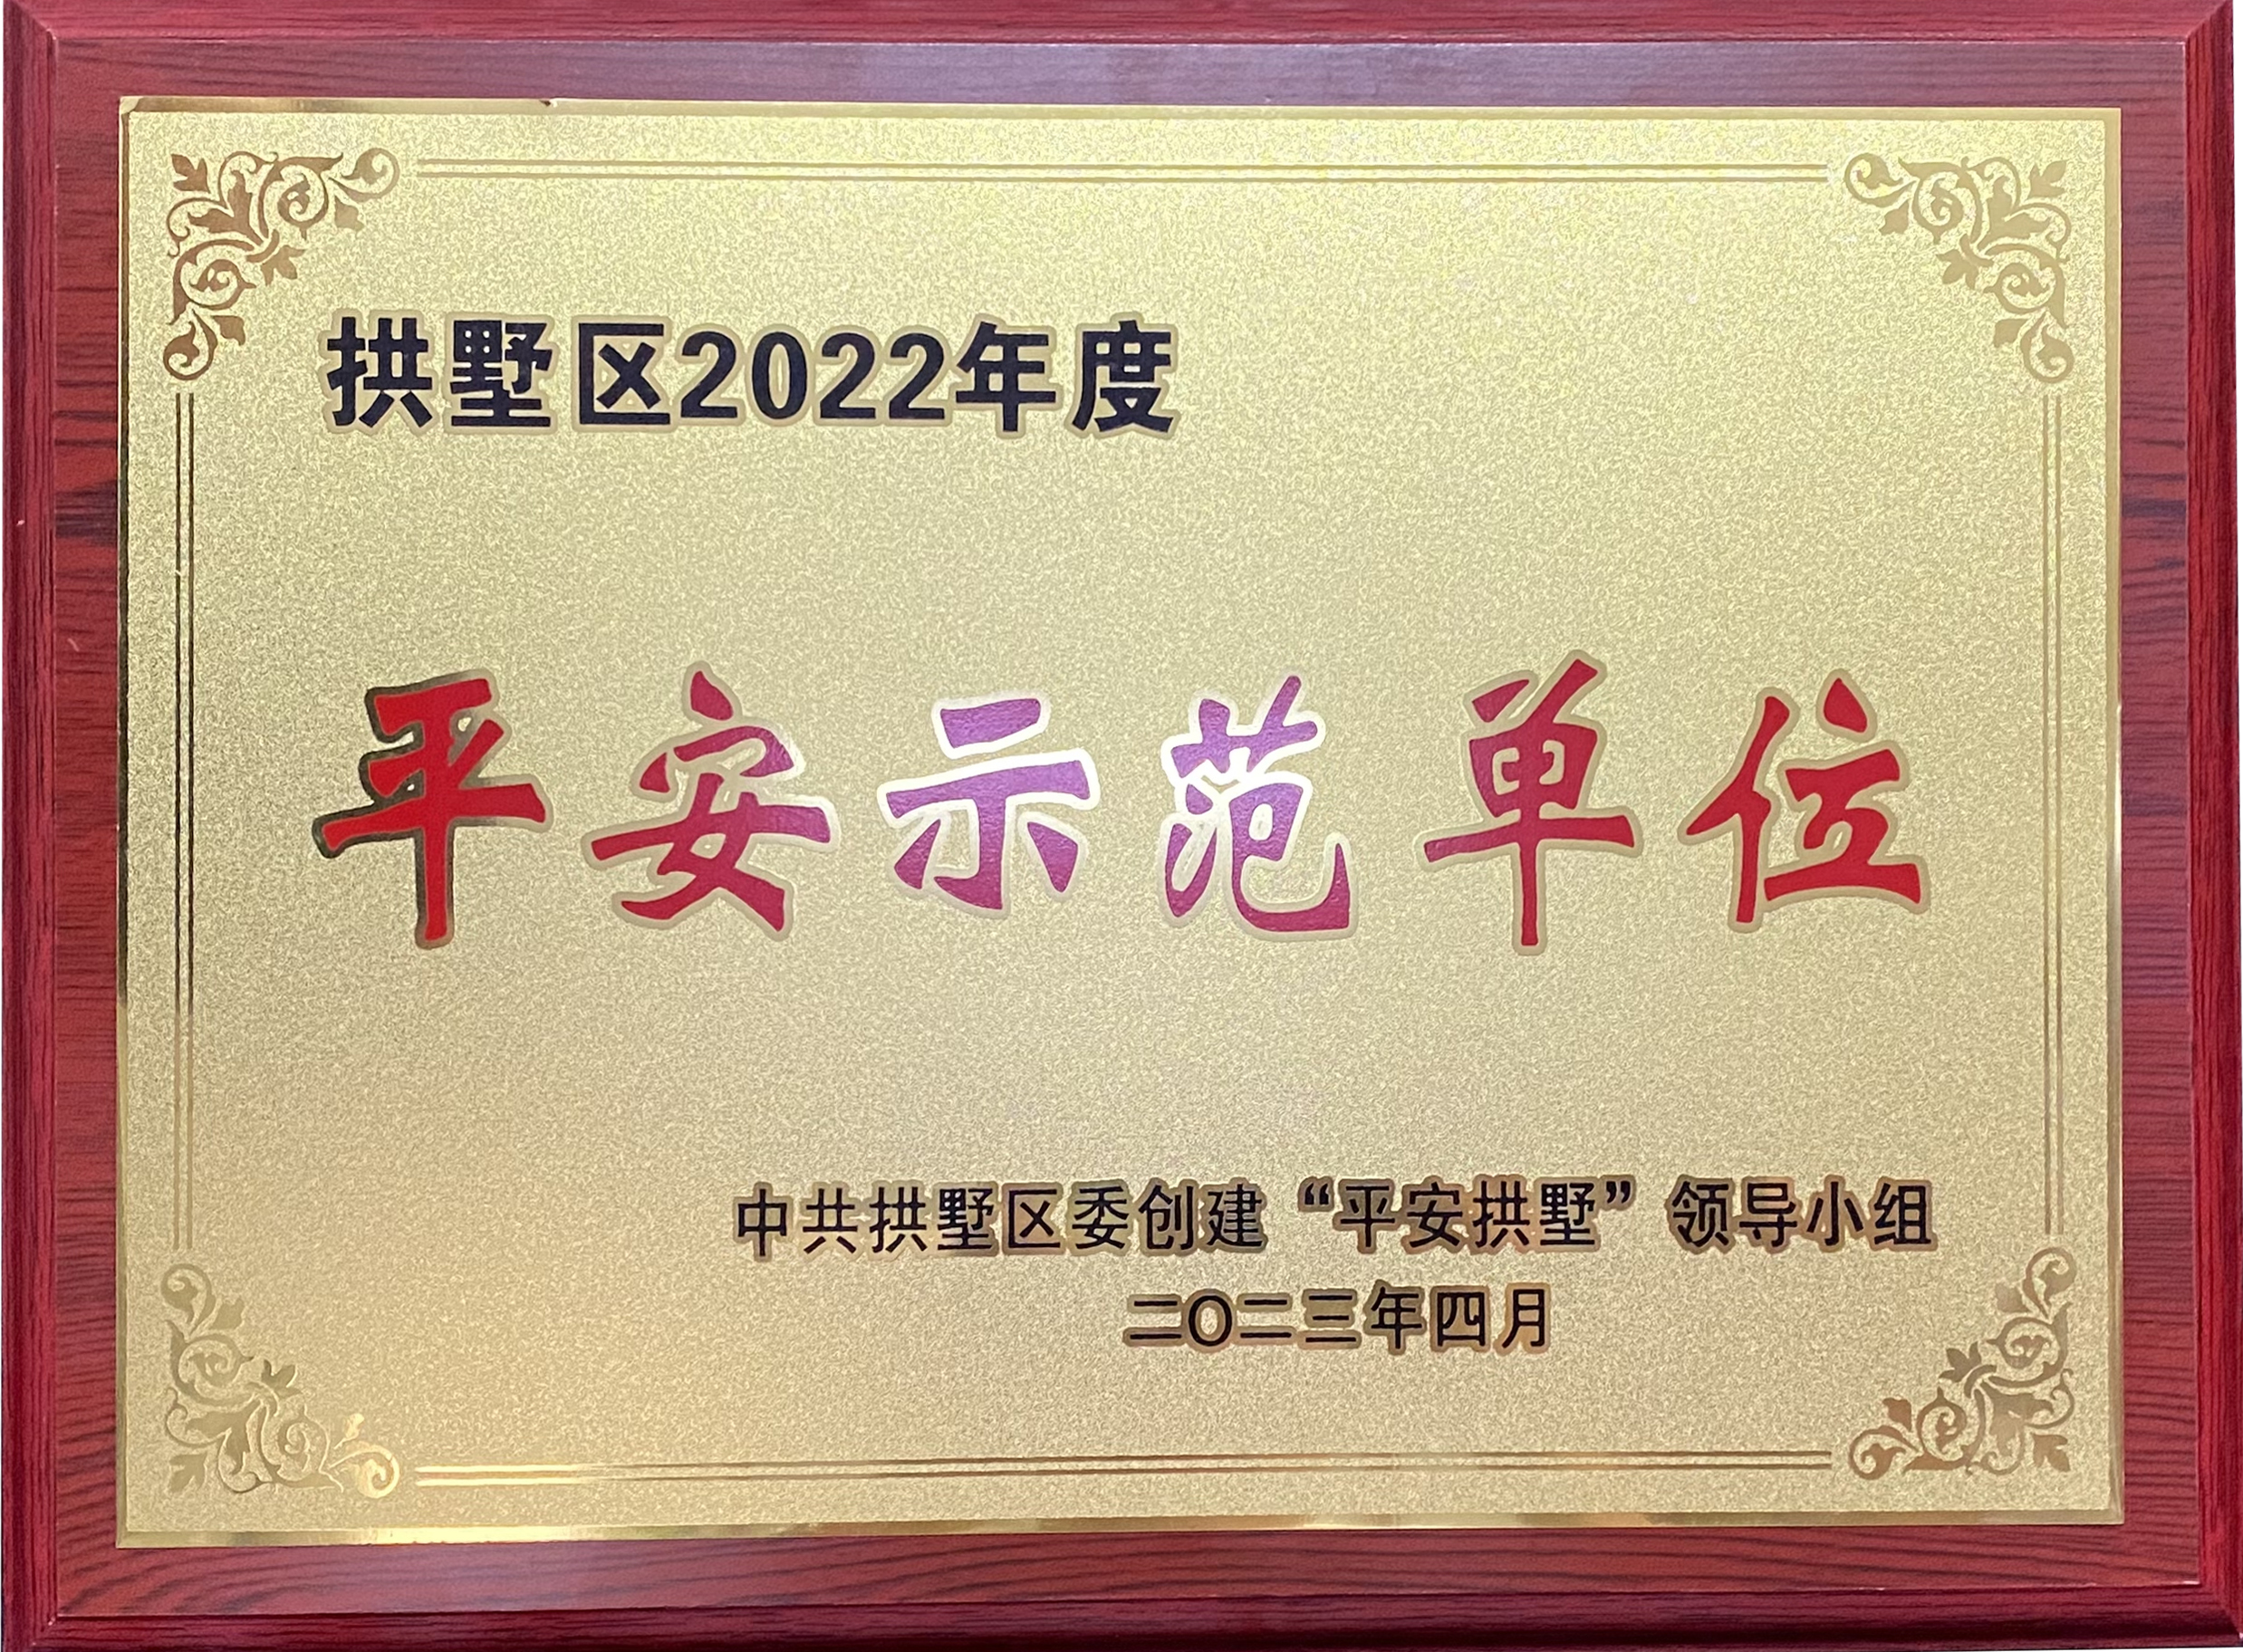 钱江商城荣获 “拱墅区2022年度平安示范单位”称号！